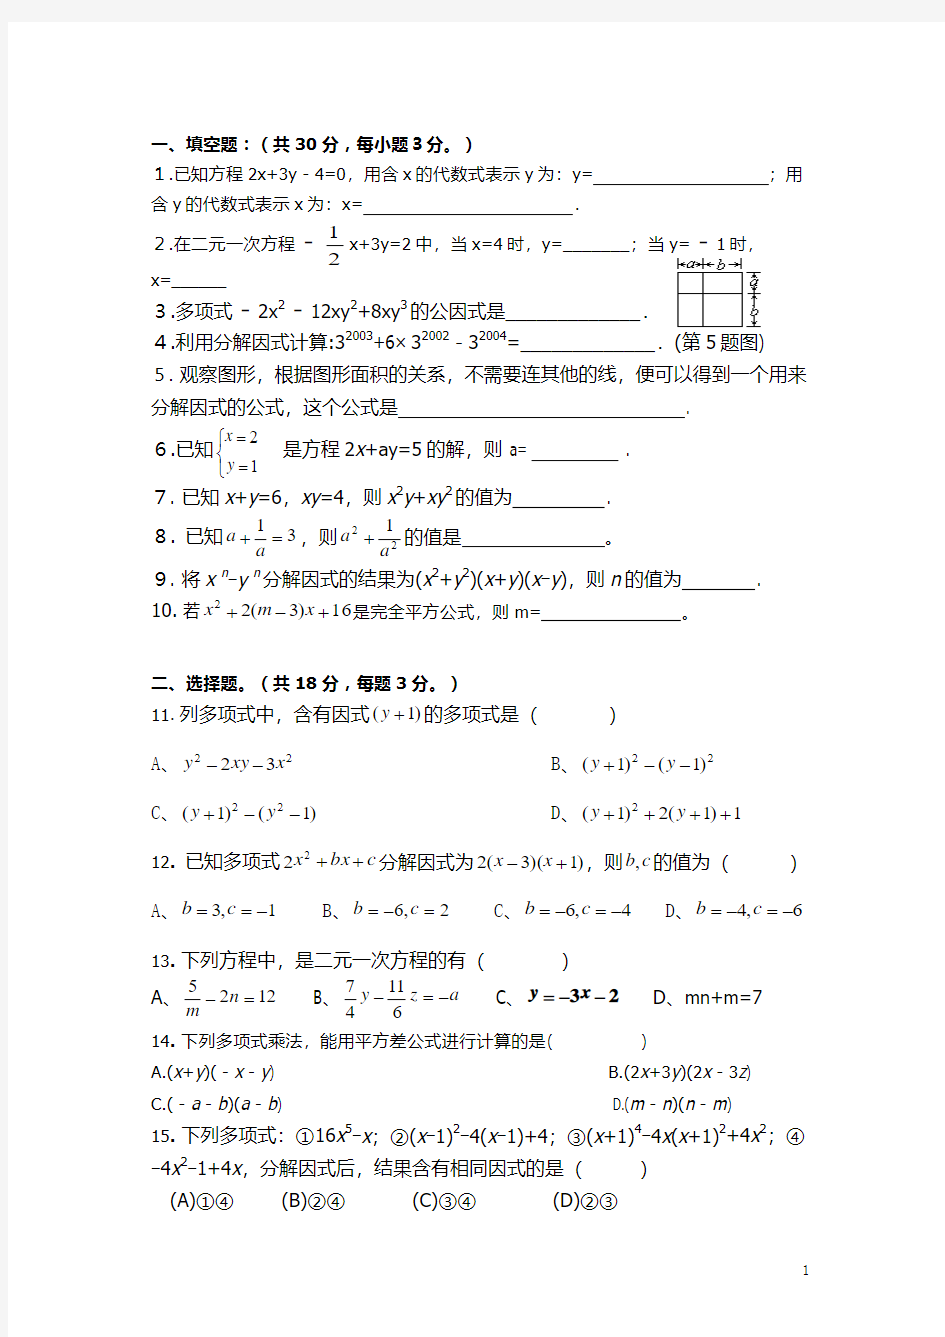 2013年新版湘教版七年级数学下册期中测试卷(含二元一次方程组、整式乘法、因式分解三大章节内容)